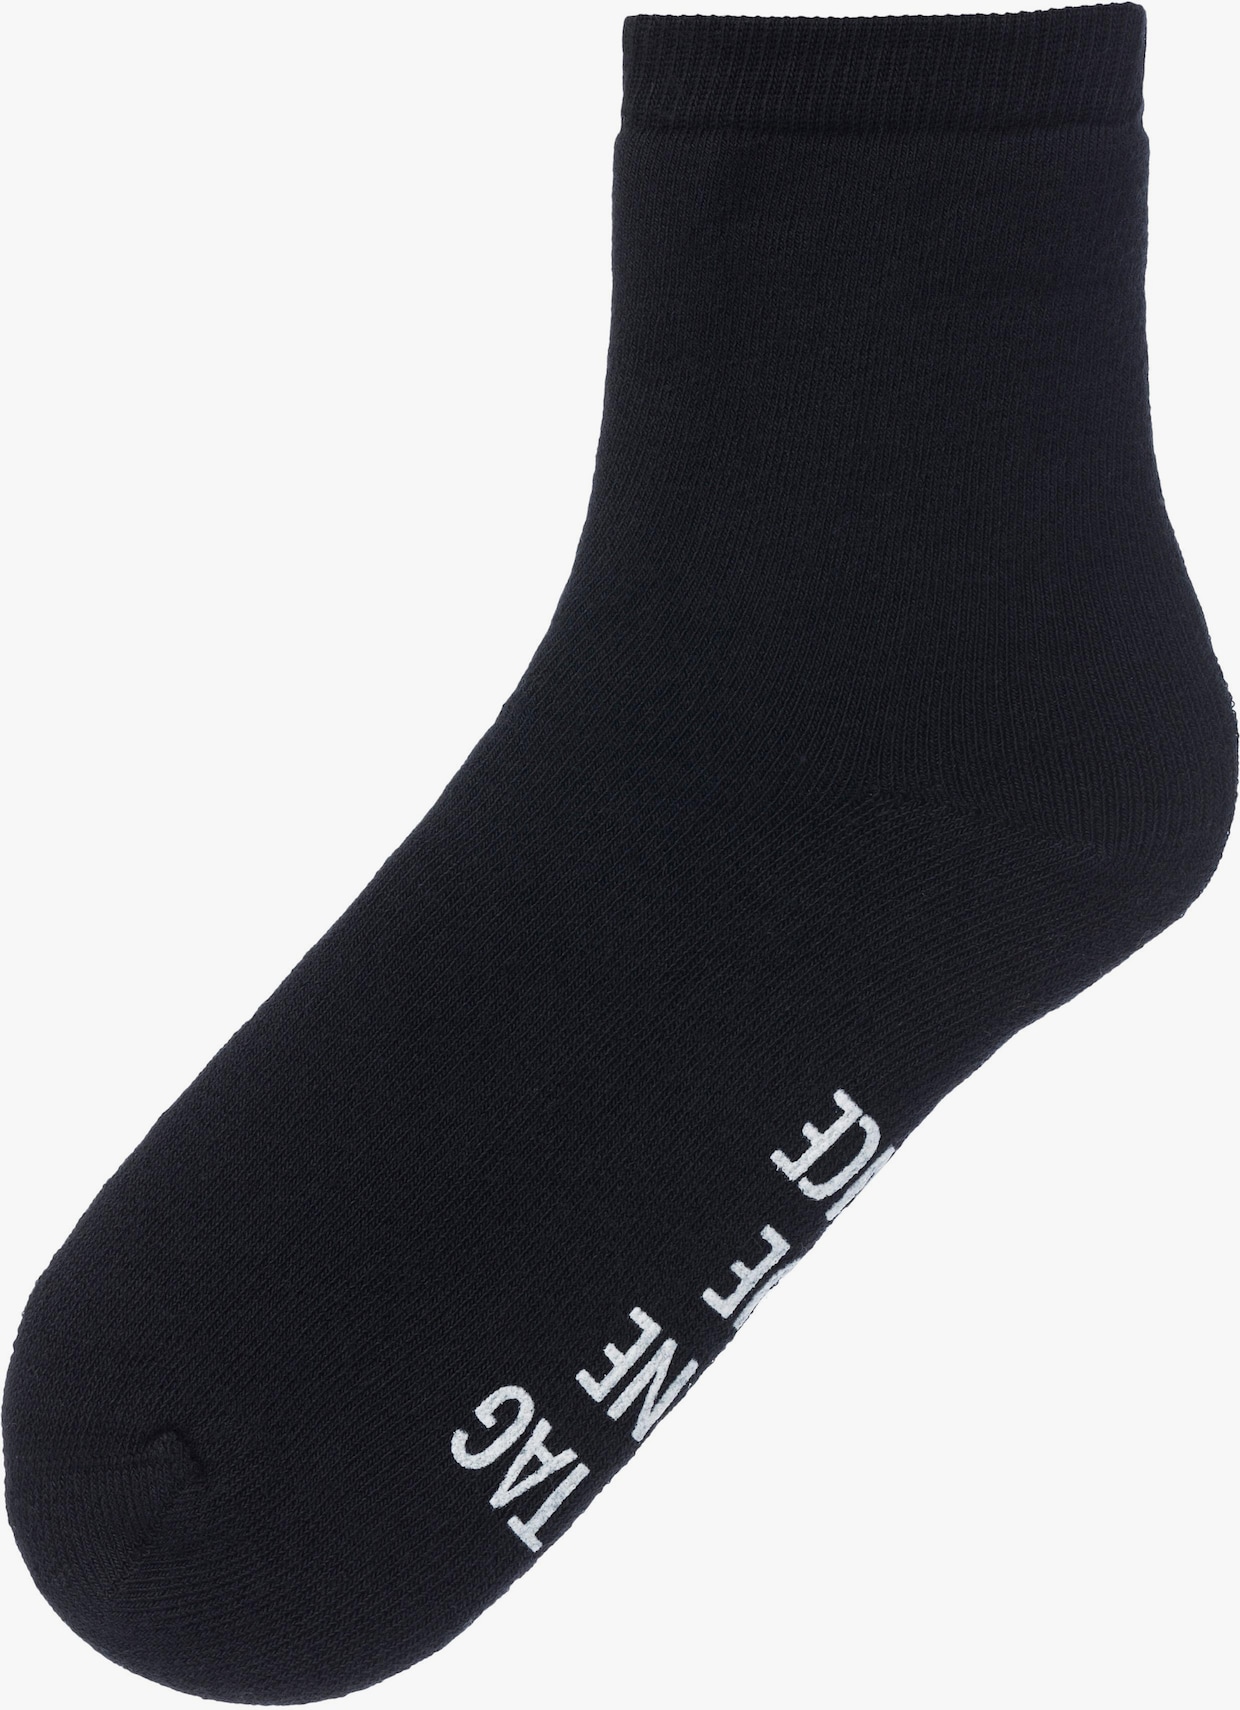 Arizona Warme sokken - zwart